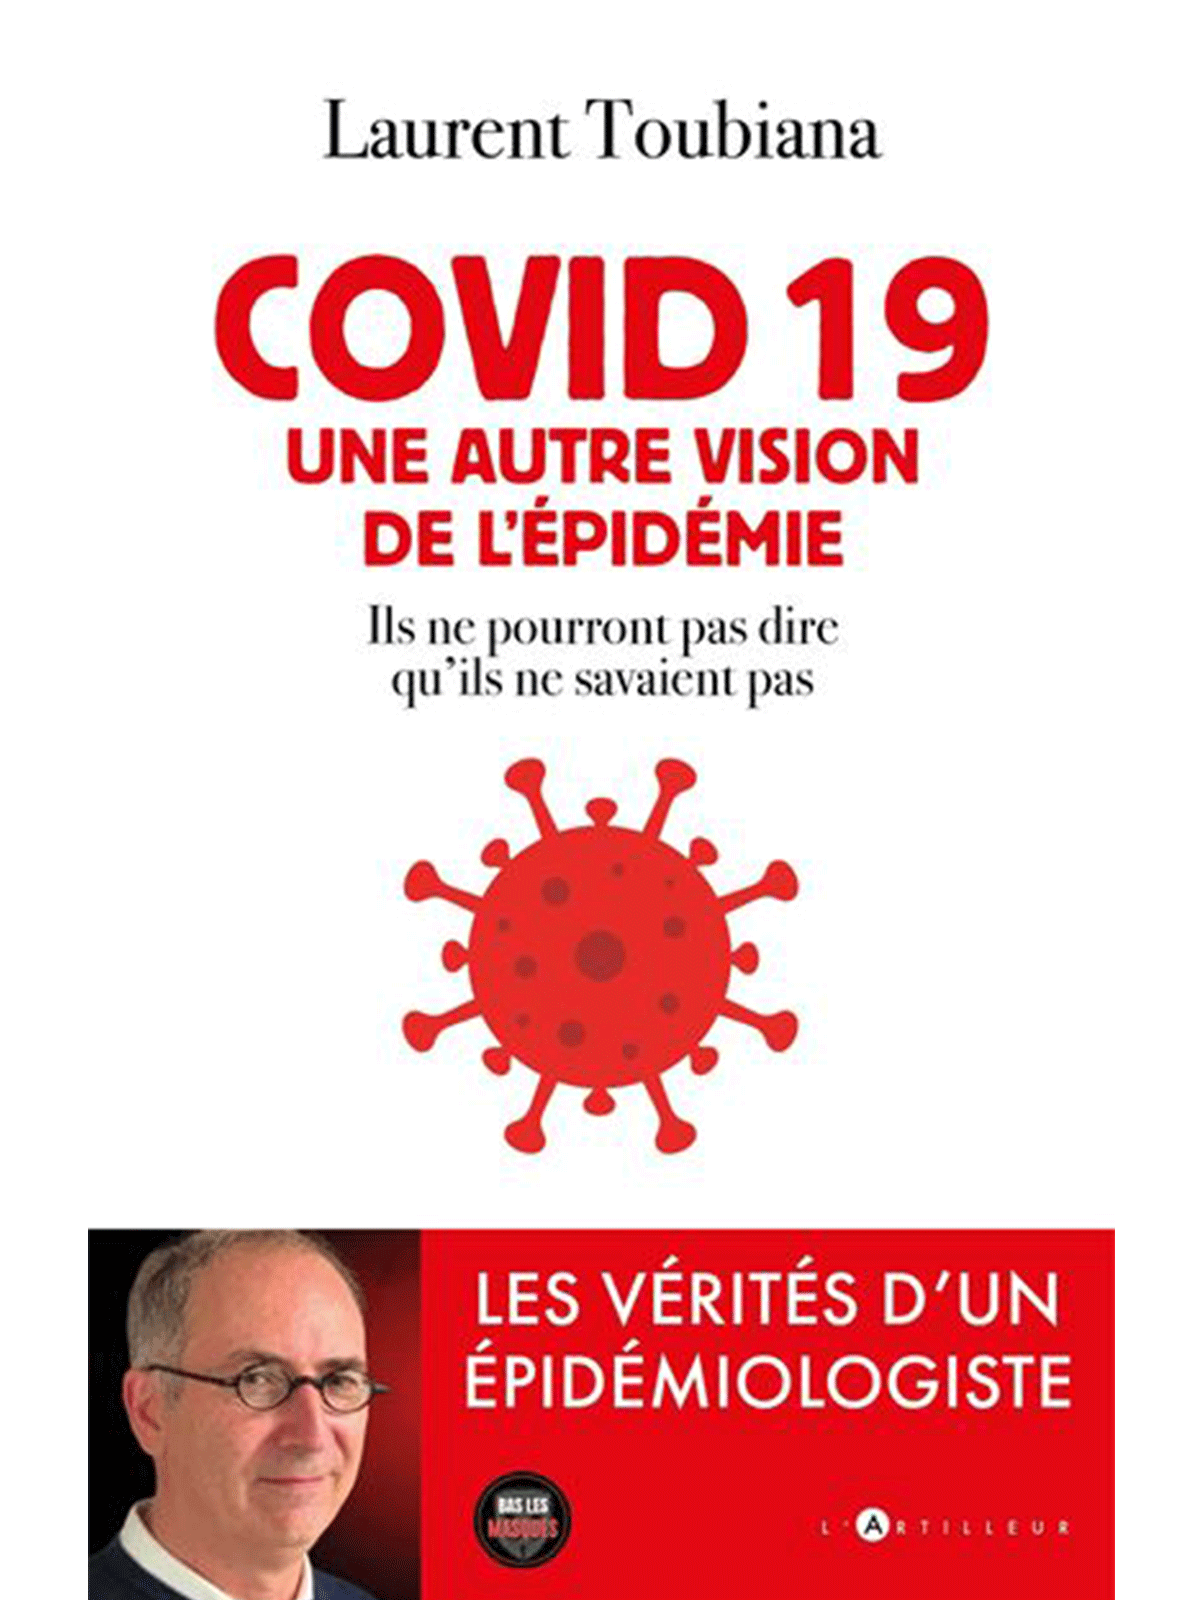 Laurent Toubiana : COVID 19 - Une autre vision de l'épidémie